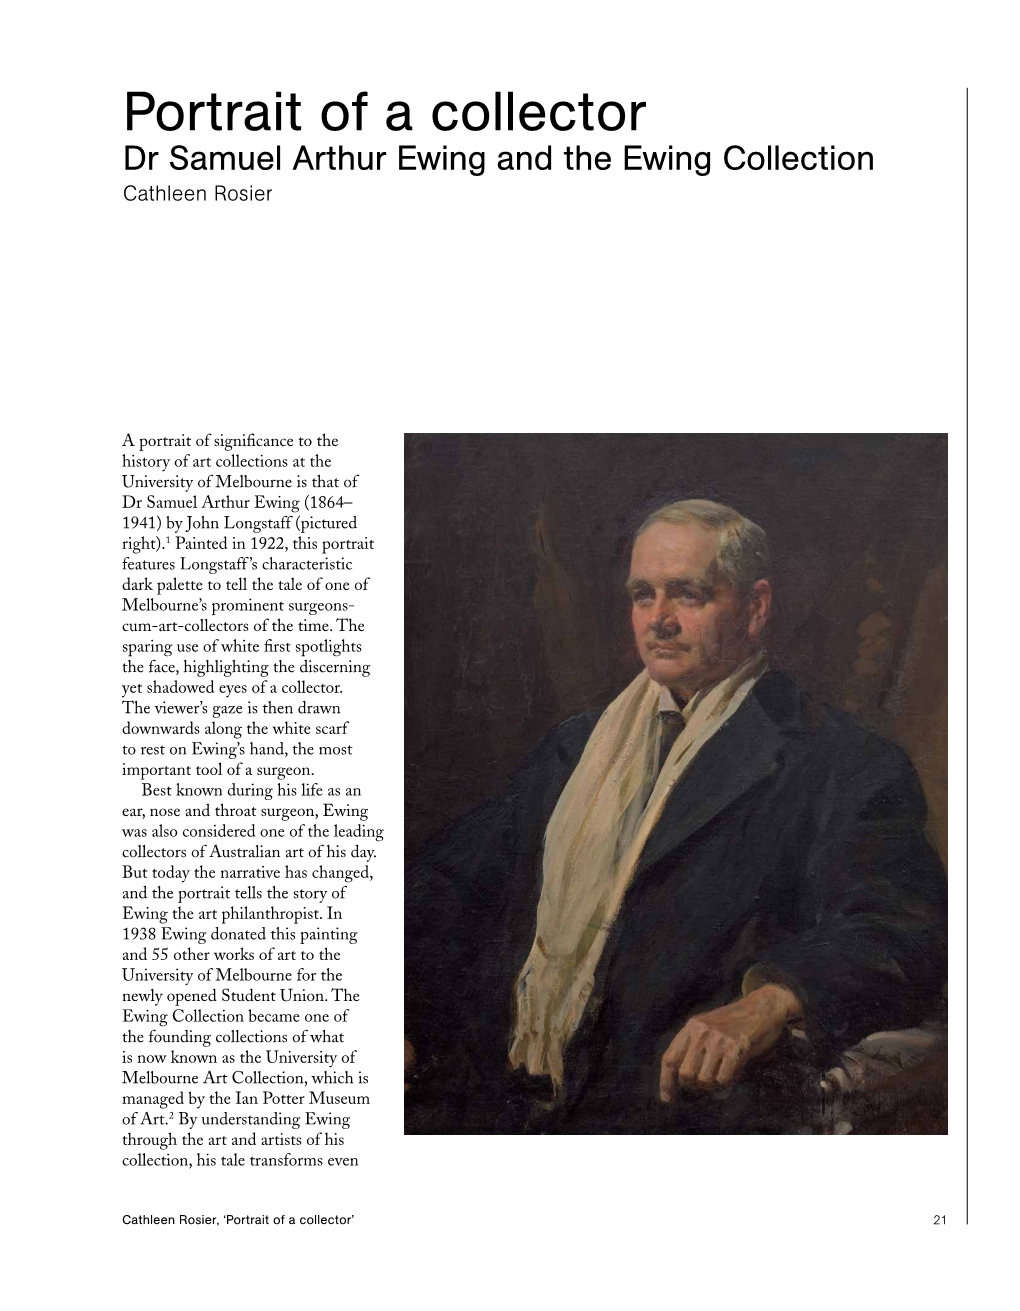 Portrait of a Collector: Dr Samuel Arthur